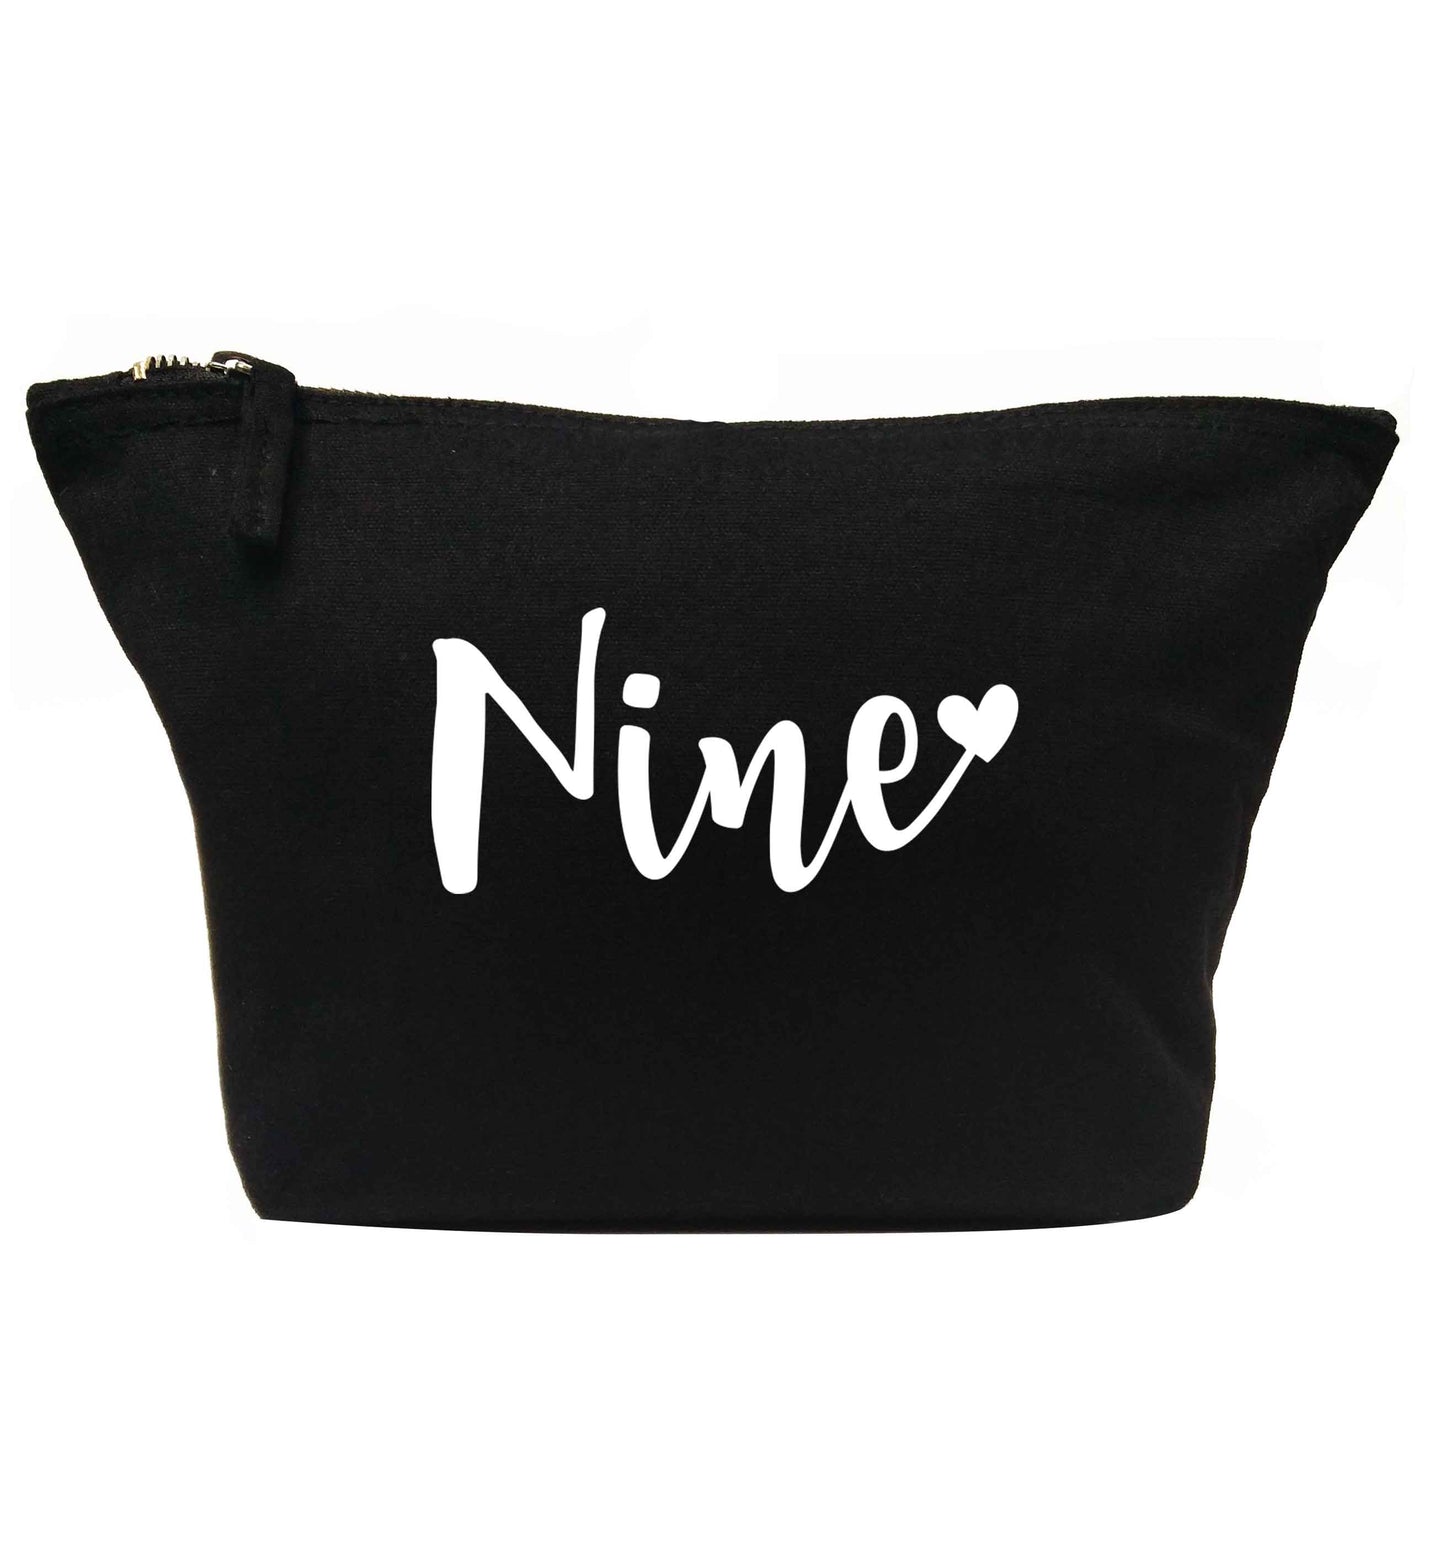 Nine and heart | Makeup / wash bag